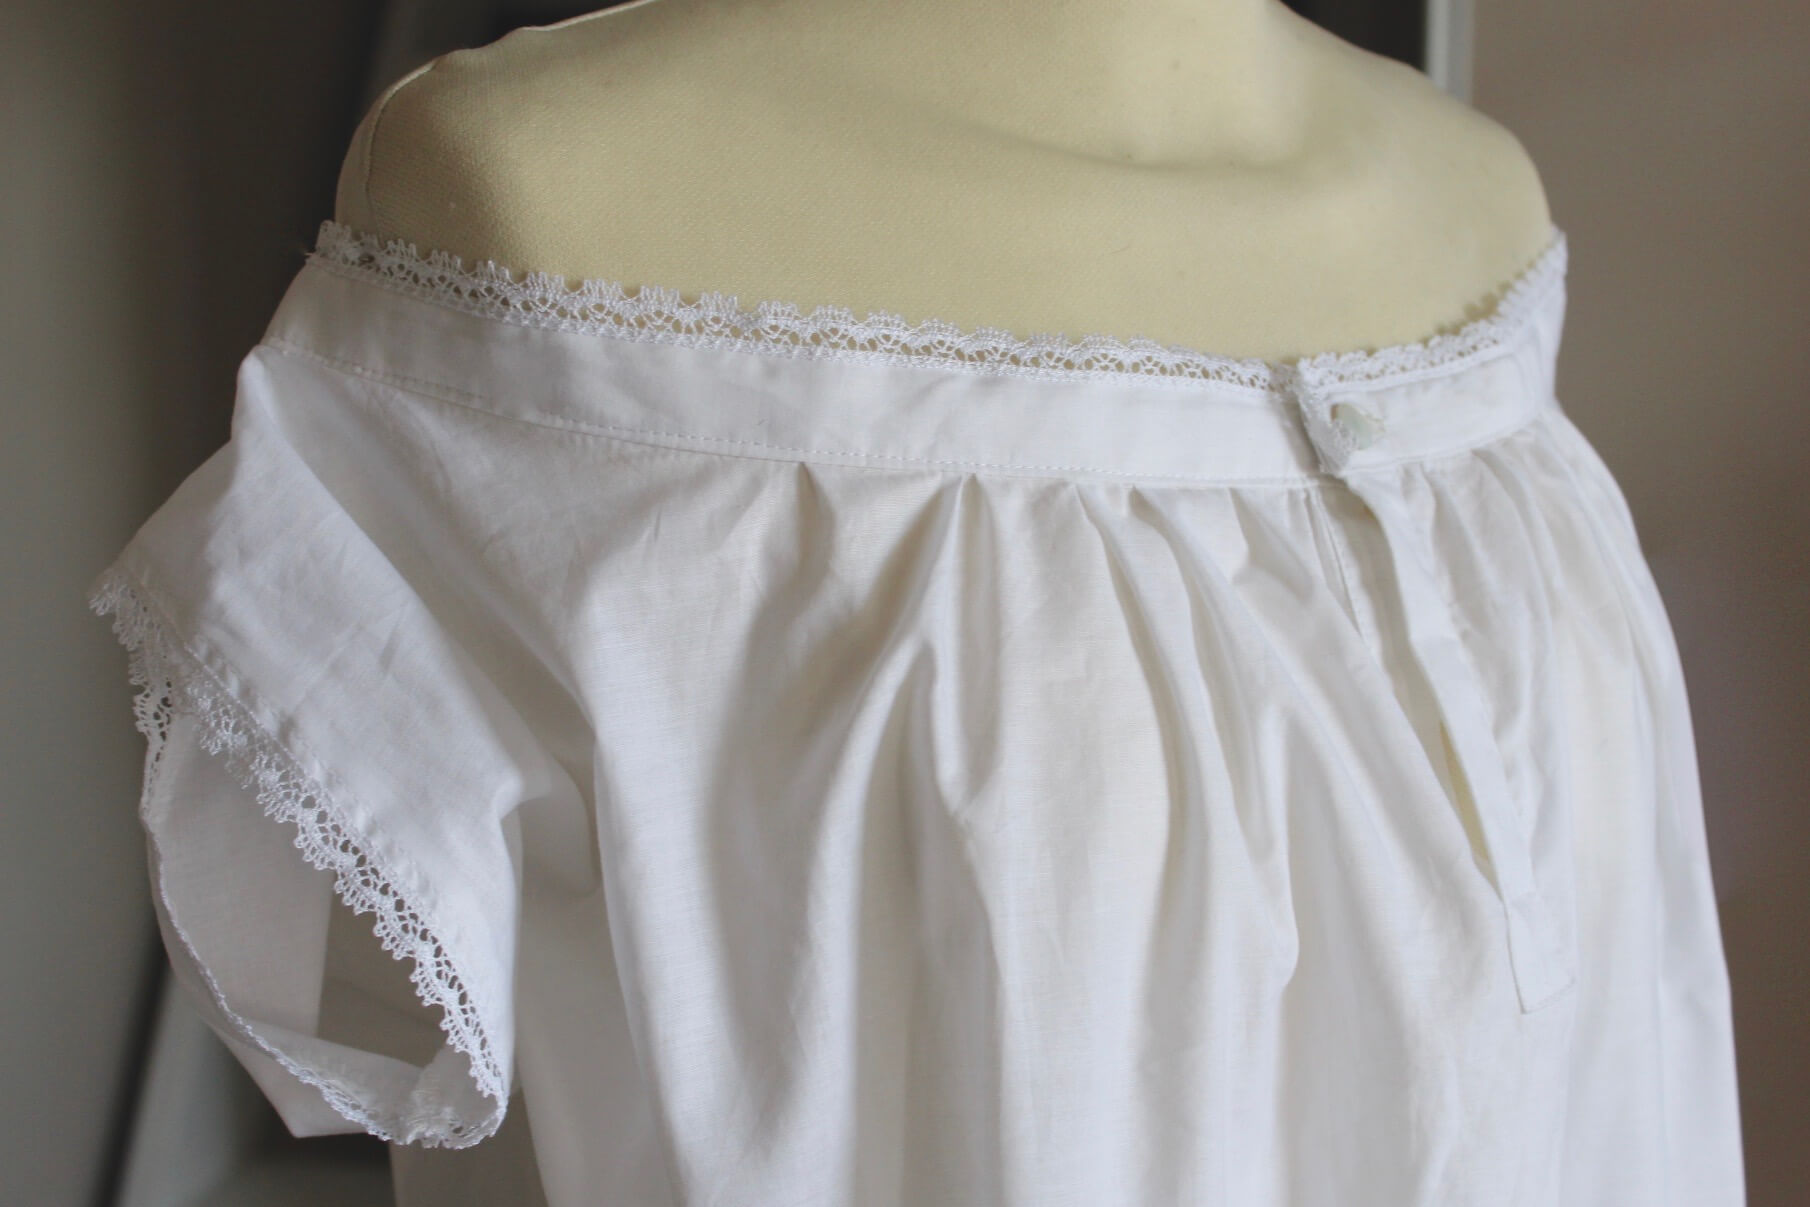 Victorian chemise 1840-1860 - Secret Times